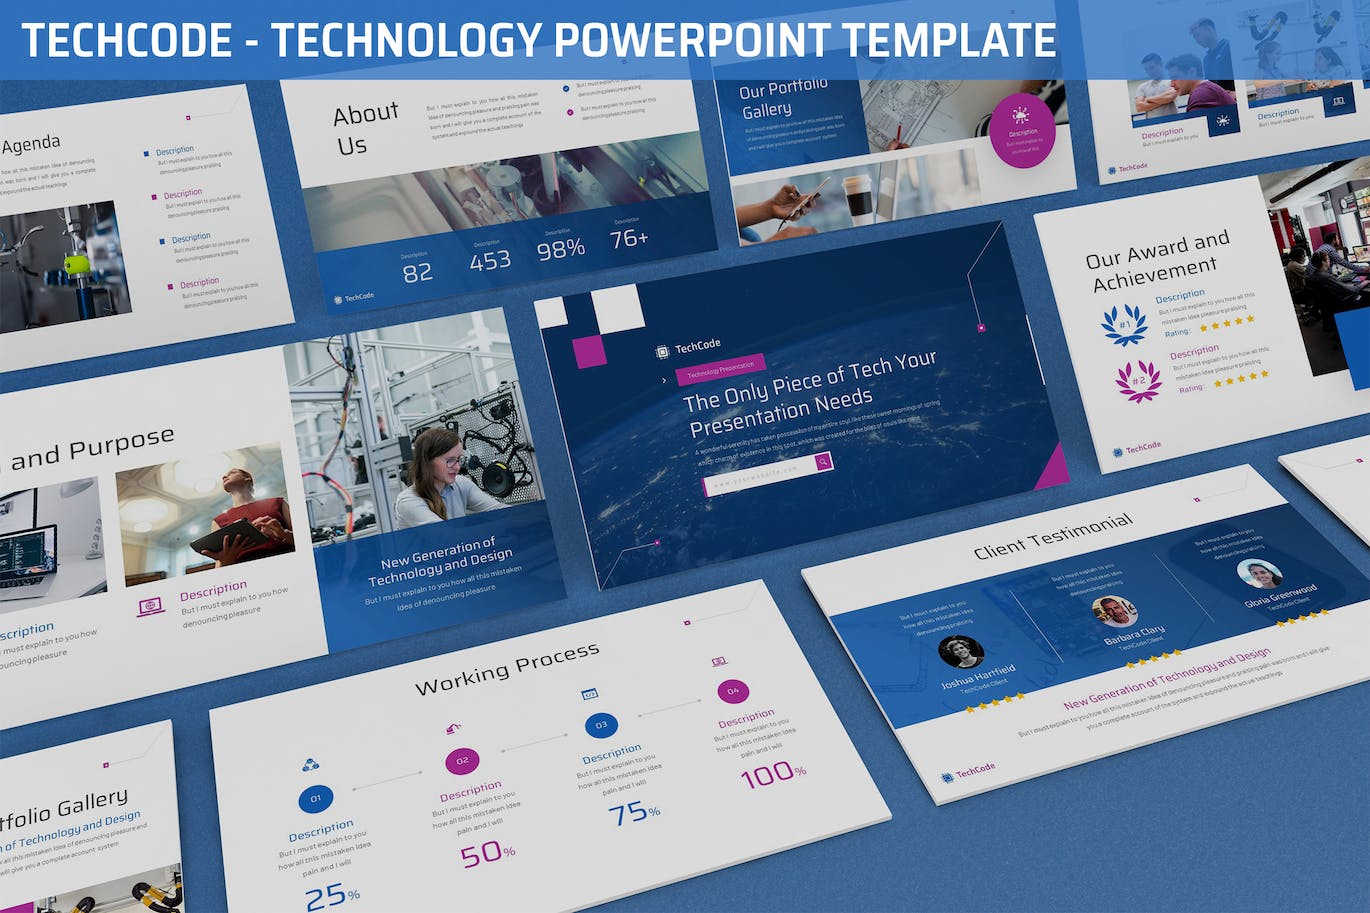 网络科技演示PPT模板 Techcode – Technology Powerpoint Template 幻灯图表 第1张